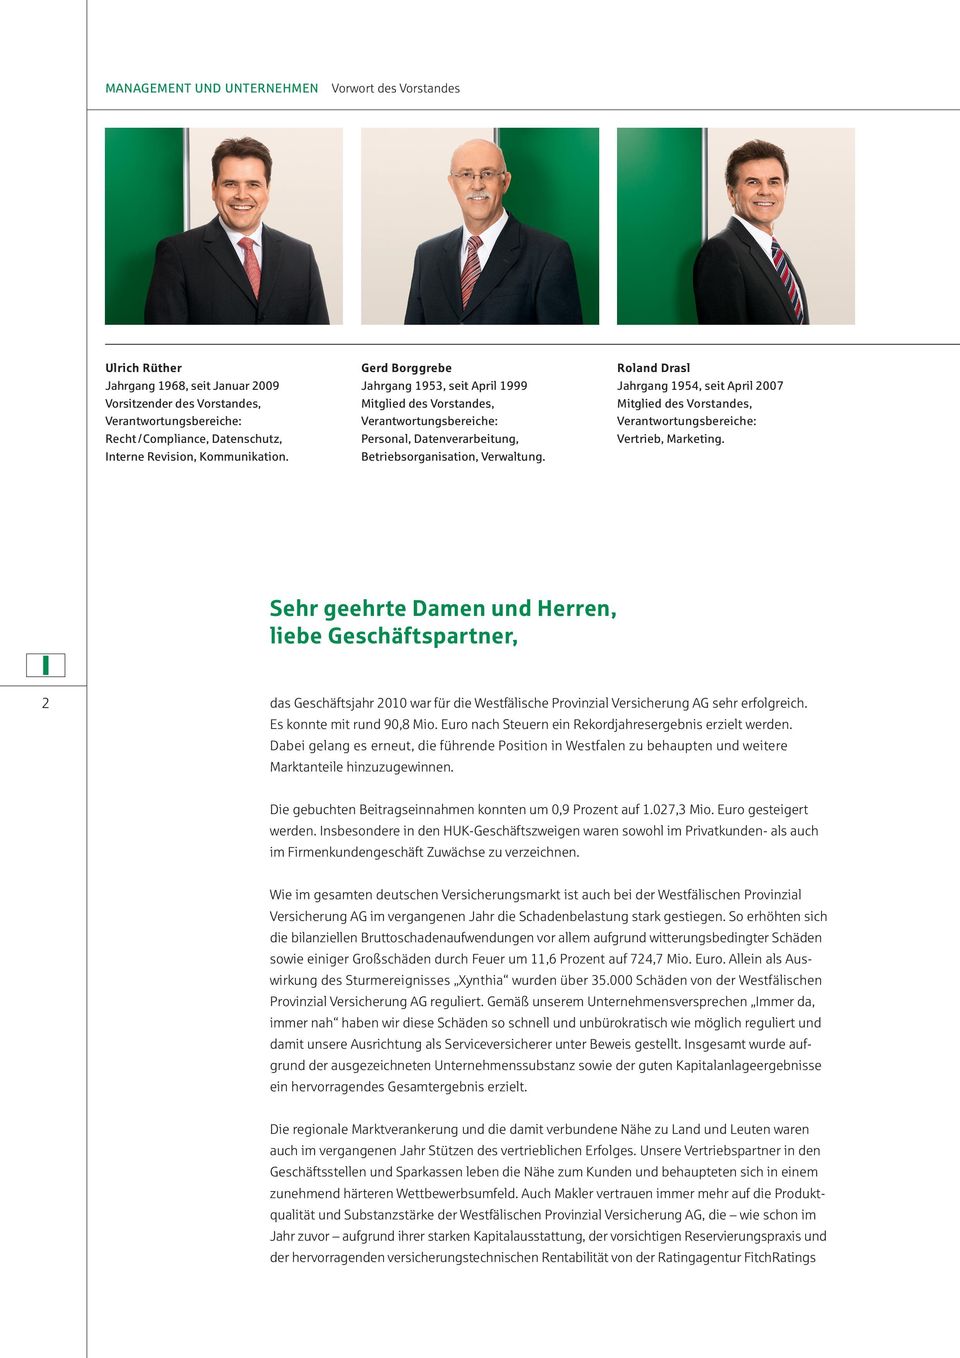 Roland Drasl Jahrgang 1954, seit April 2007 Mitglied des Vorstandes, Verantwortungsbereiche: Vertrieb, Marketing.